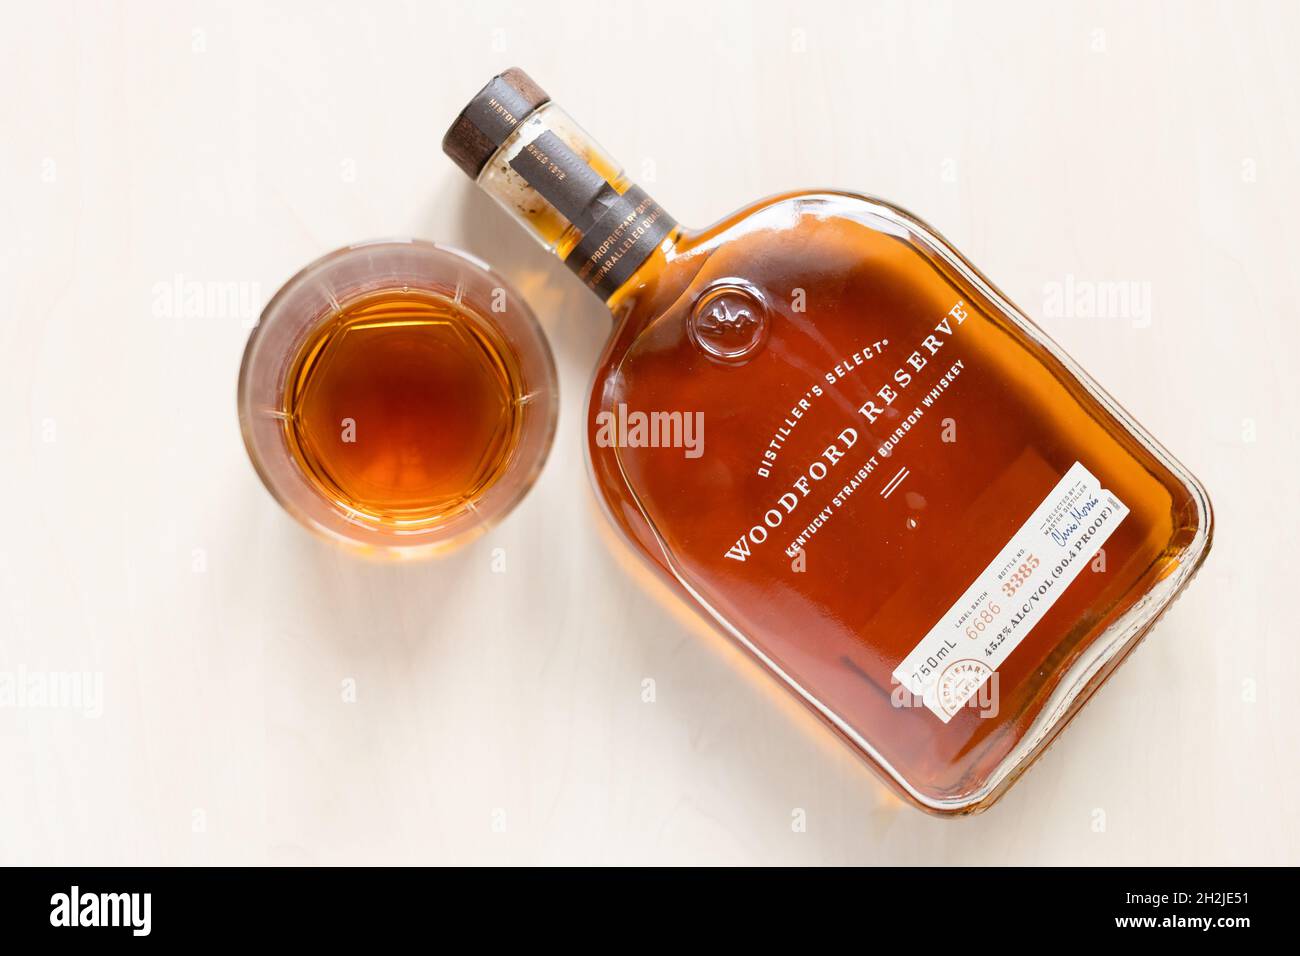 Moscou, Russie - 22 septembre 2021 : bouteille en verre et couchée avec whisky bourbon droit Woodford Reserve sur table lumineuse.La fabrication du bourbon fin a commencé Banque D'Images